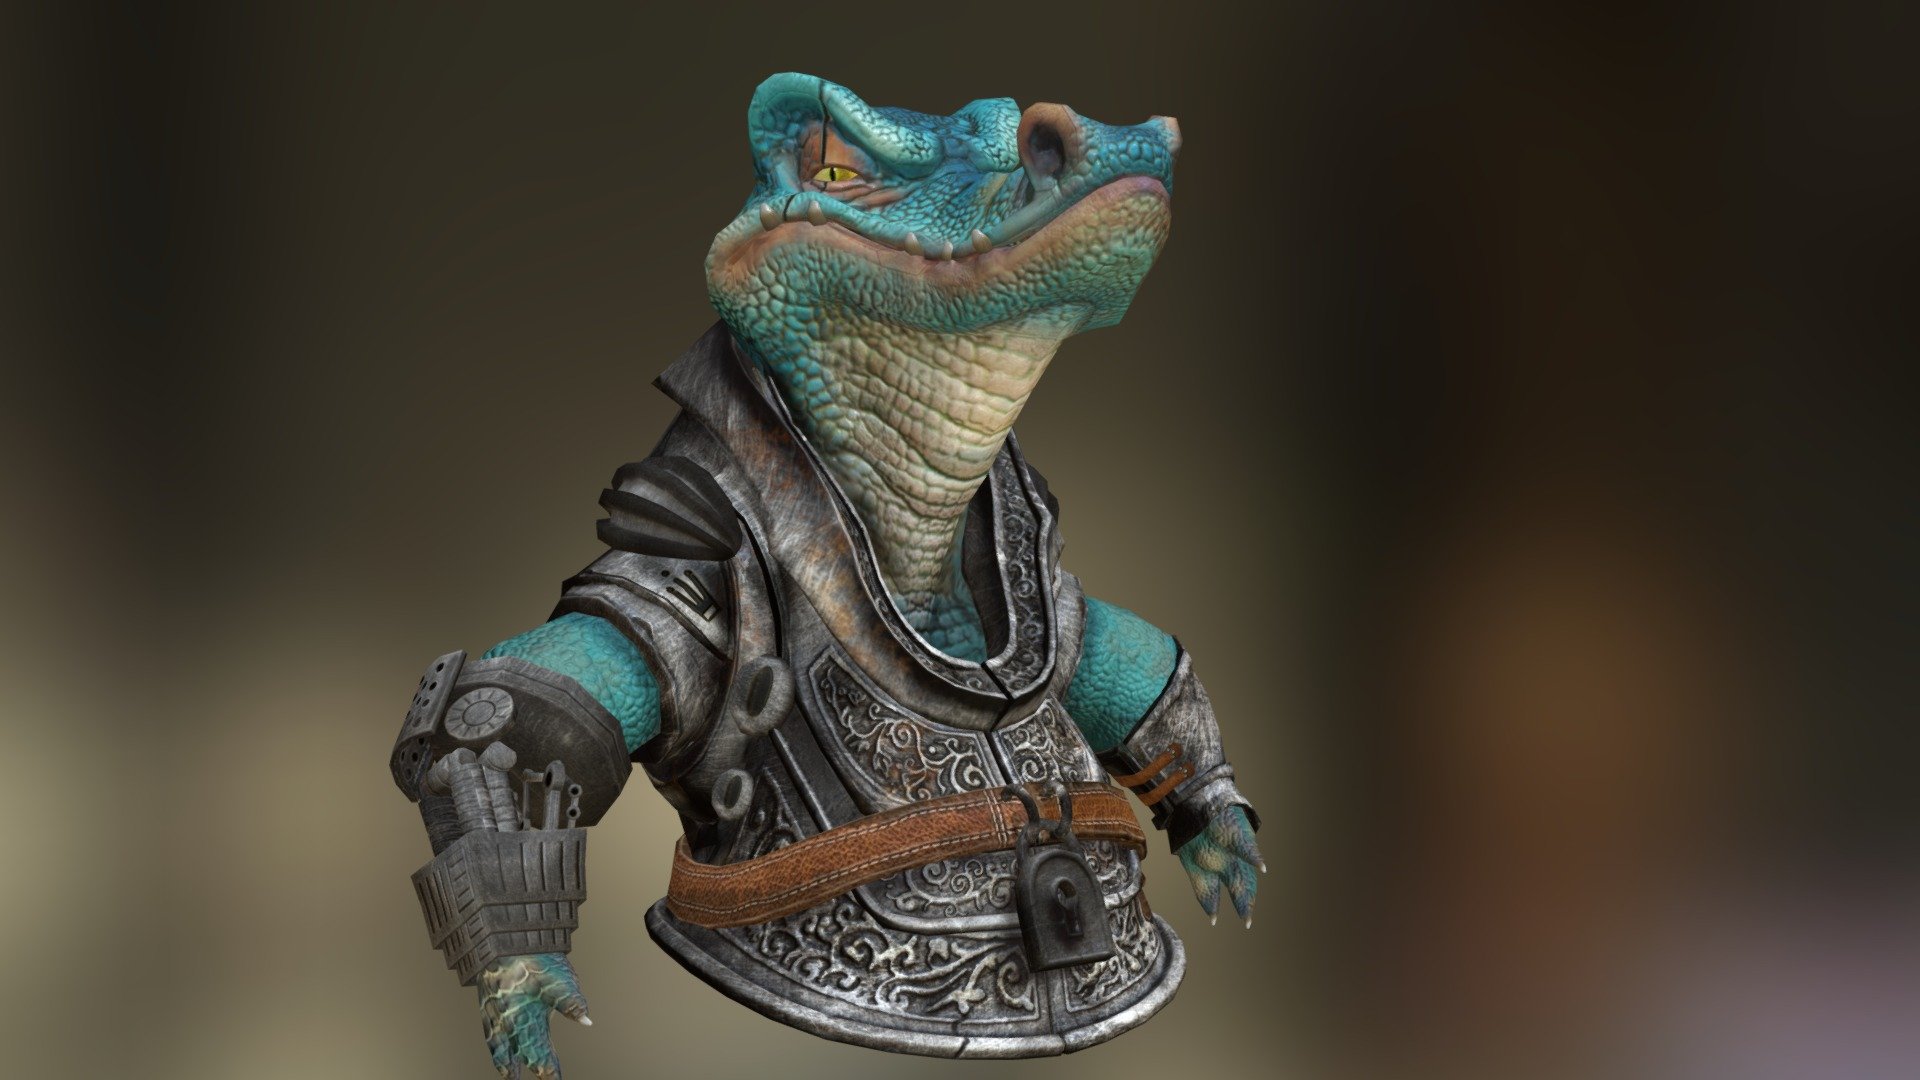 crocodile fan art - 3D model by bogdanovicana 3d model